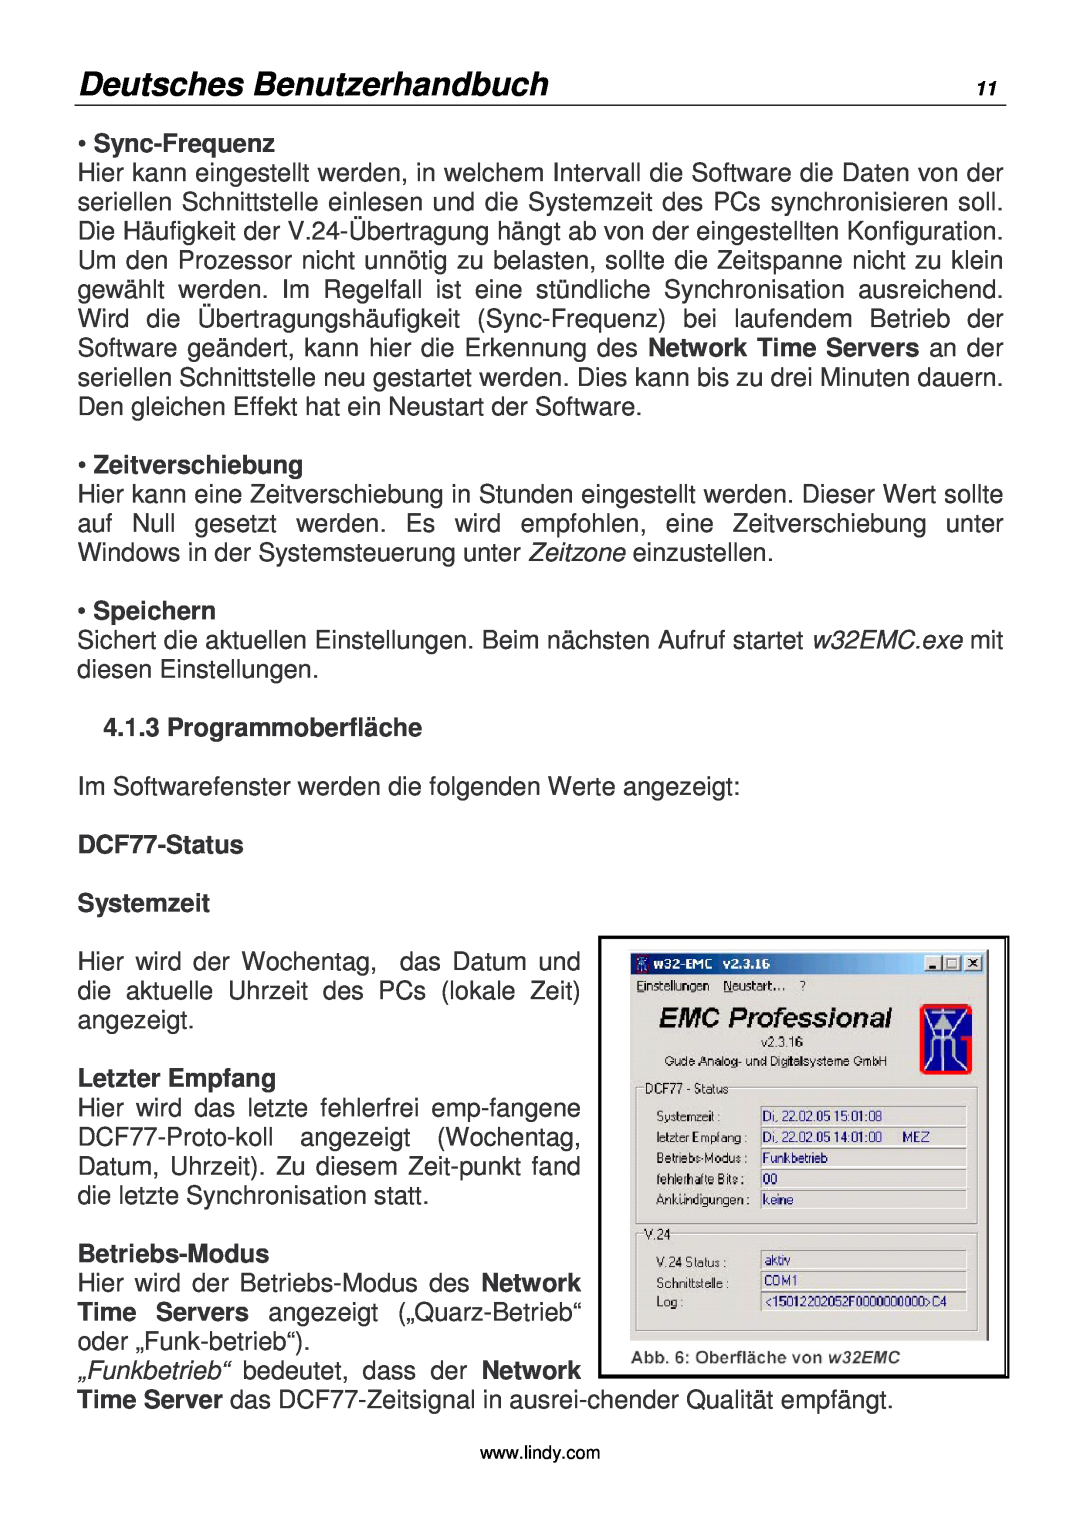 Lindy 20988 Deutsches Benutzerhandbuch, Sync-Frequenz, Zeitverschiebung, Speichern, Programmoberfläche, Letzter Empfang 